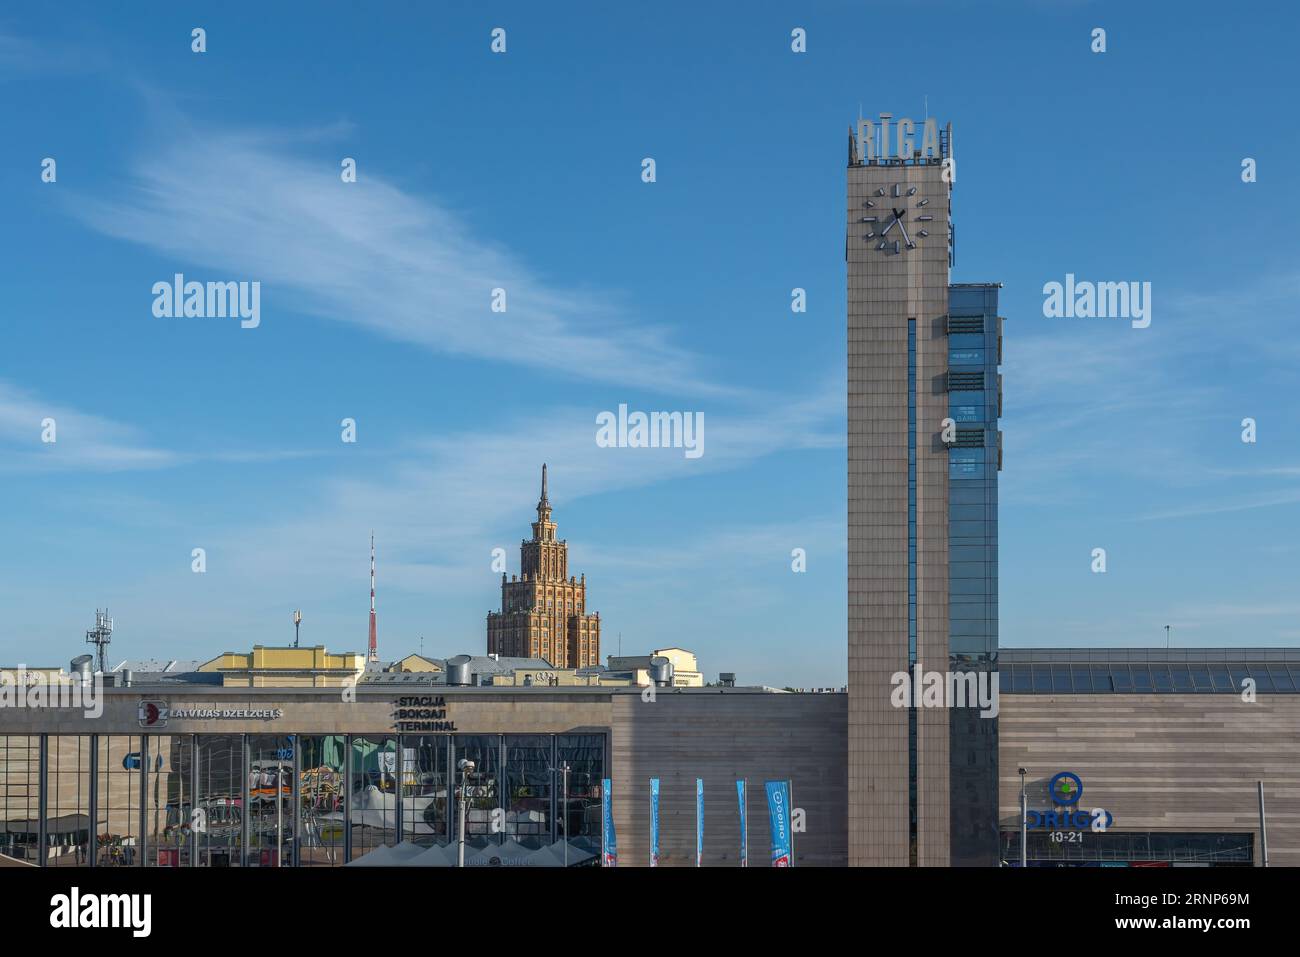 Tour de l'horloge de la gare centrale et Académie lettone des sciences - Riga, Lettonie Banque D'Images